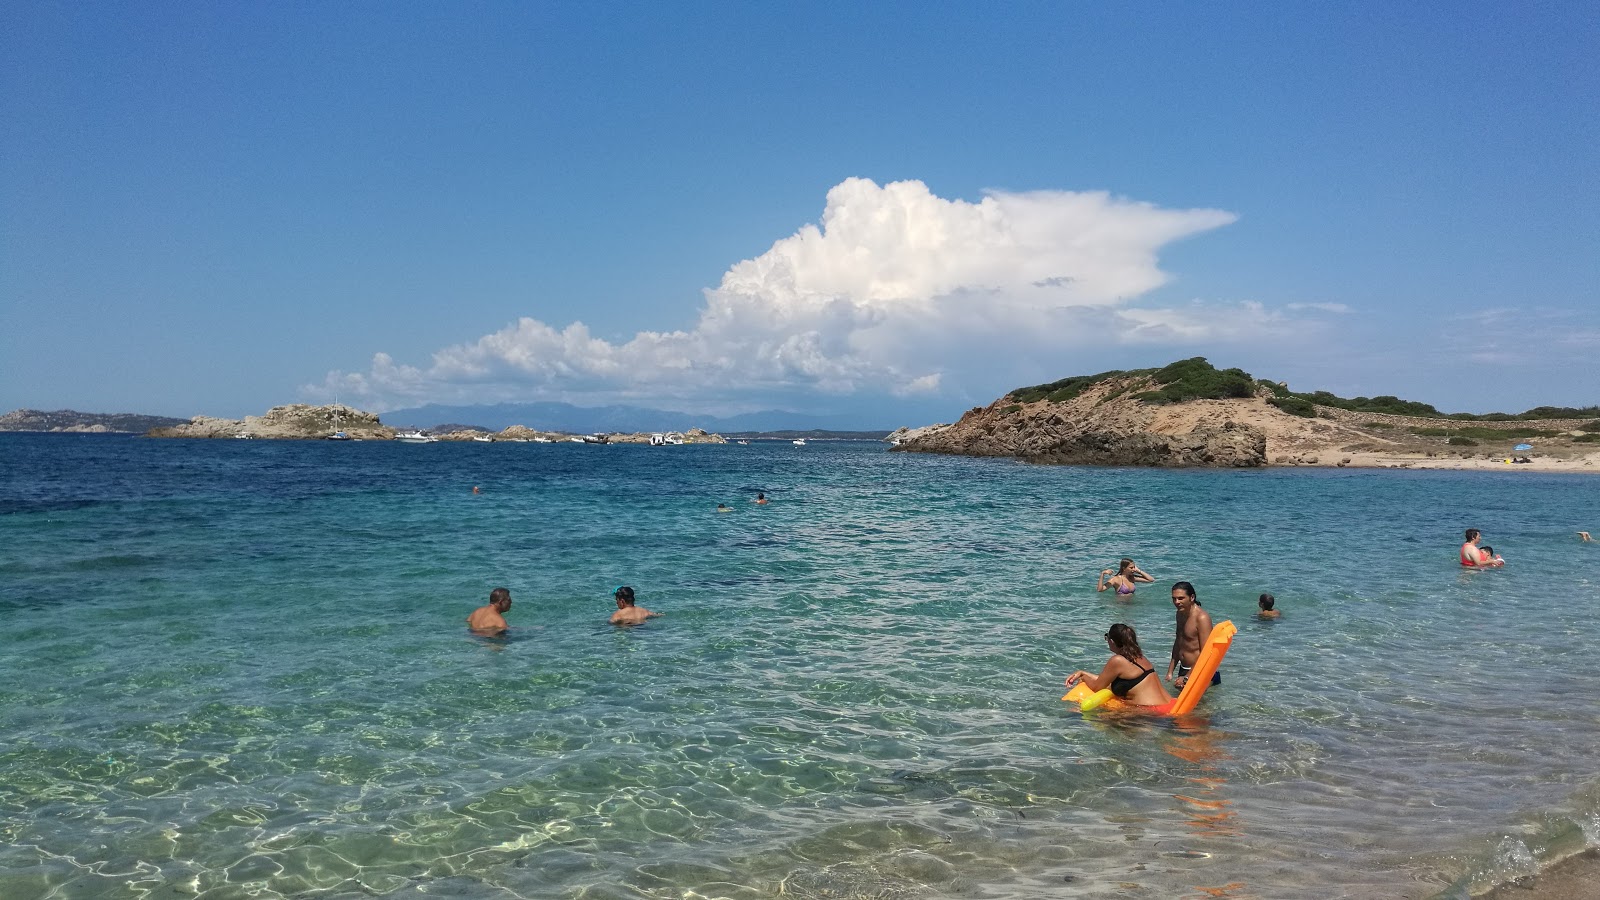 Photo of Spiaggia del Morto with small bay